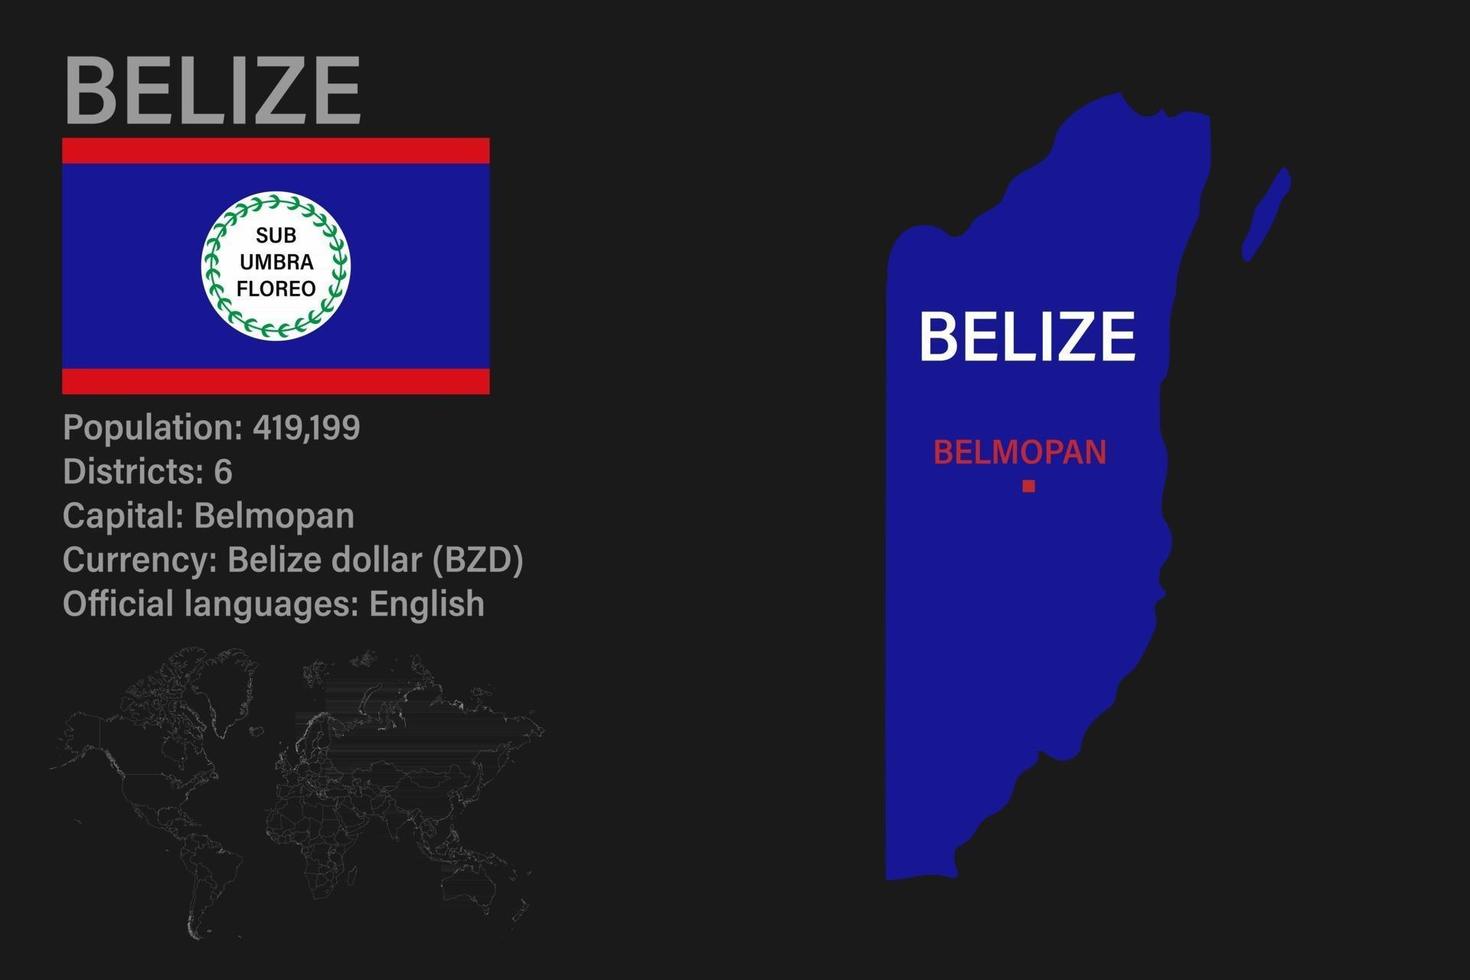 hochdetaillierte Belize-Karte mit Flagge, Hauptstadt und kleiner Weltkarte vektor